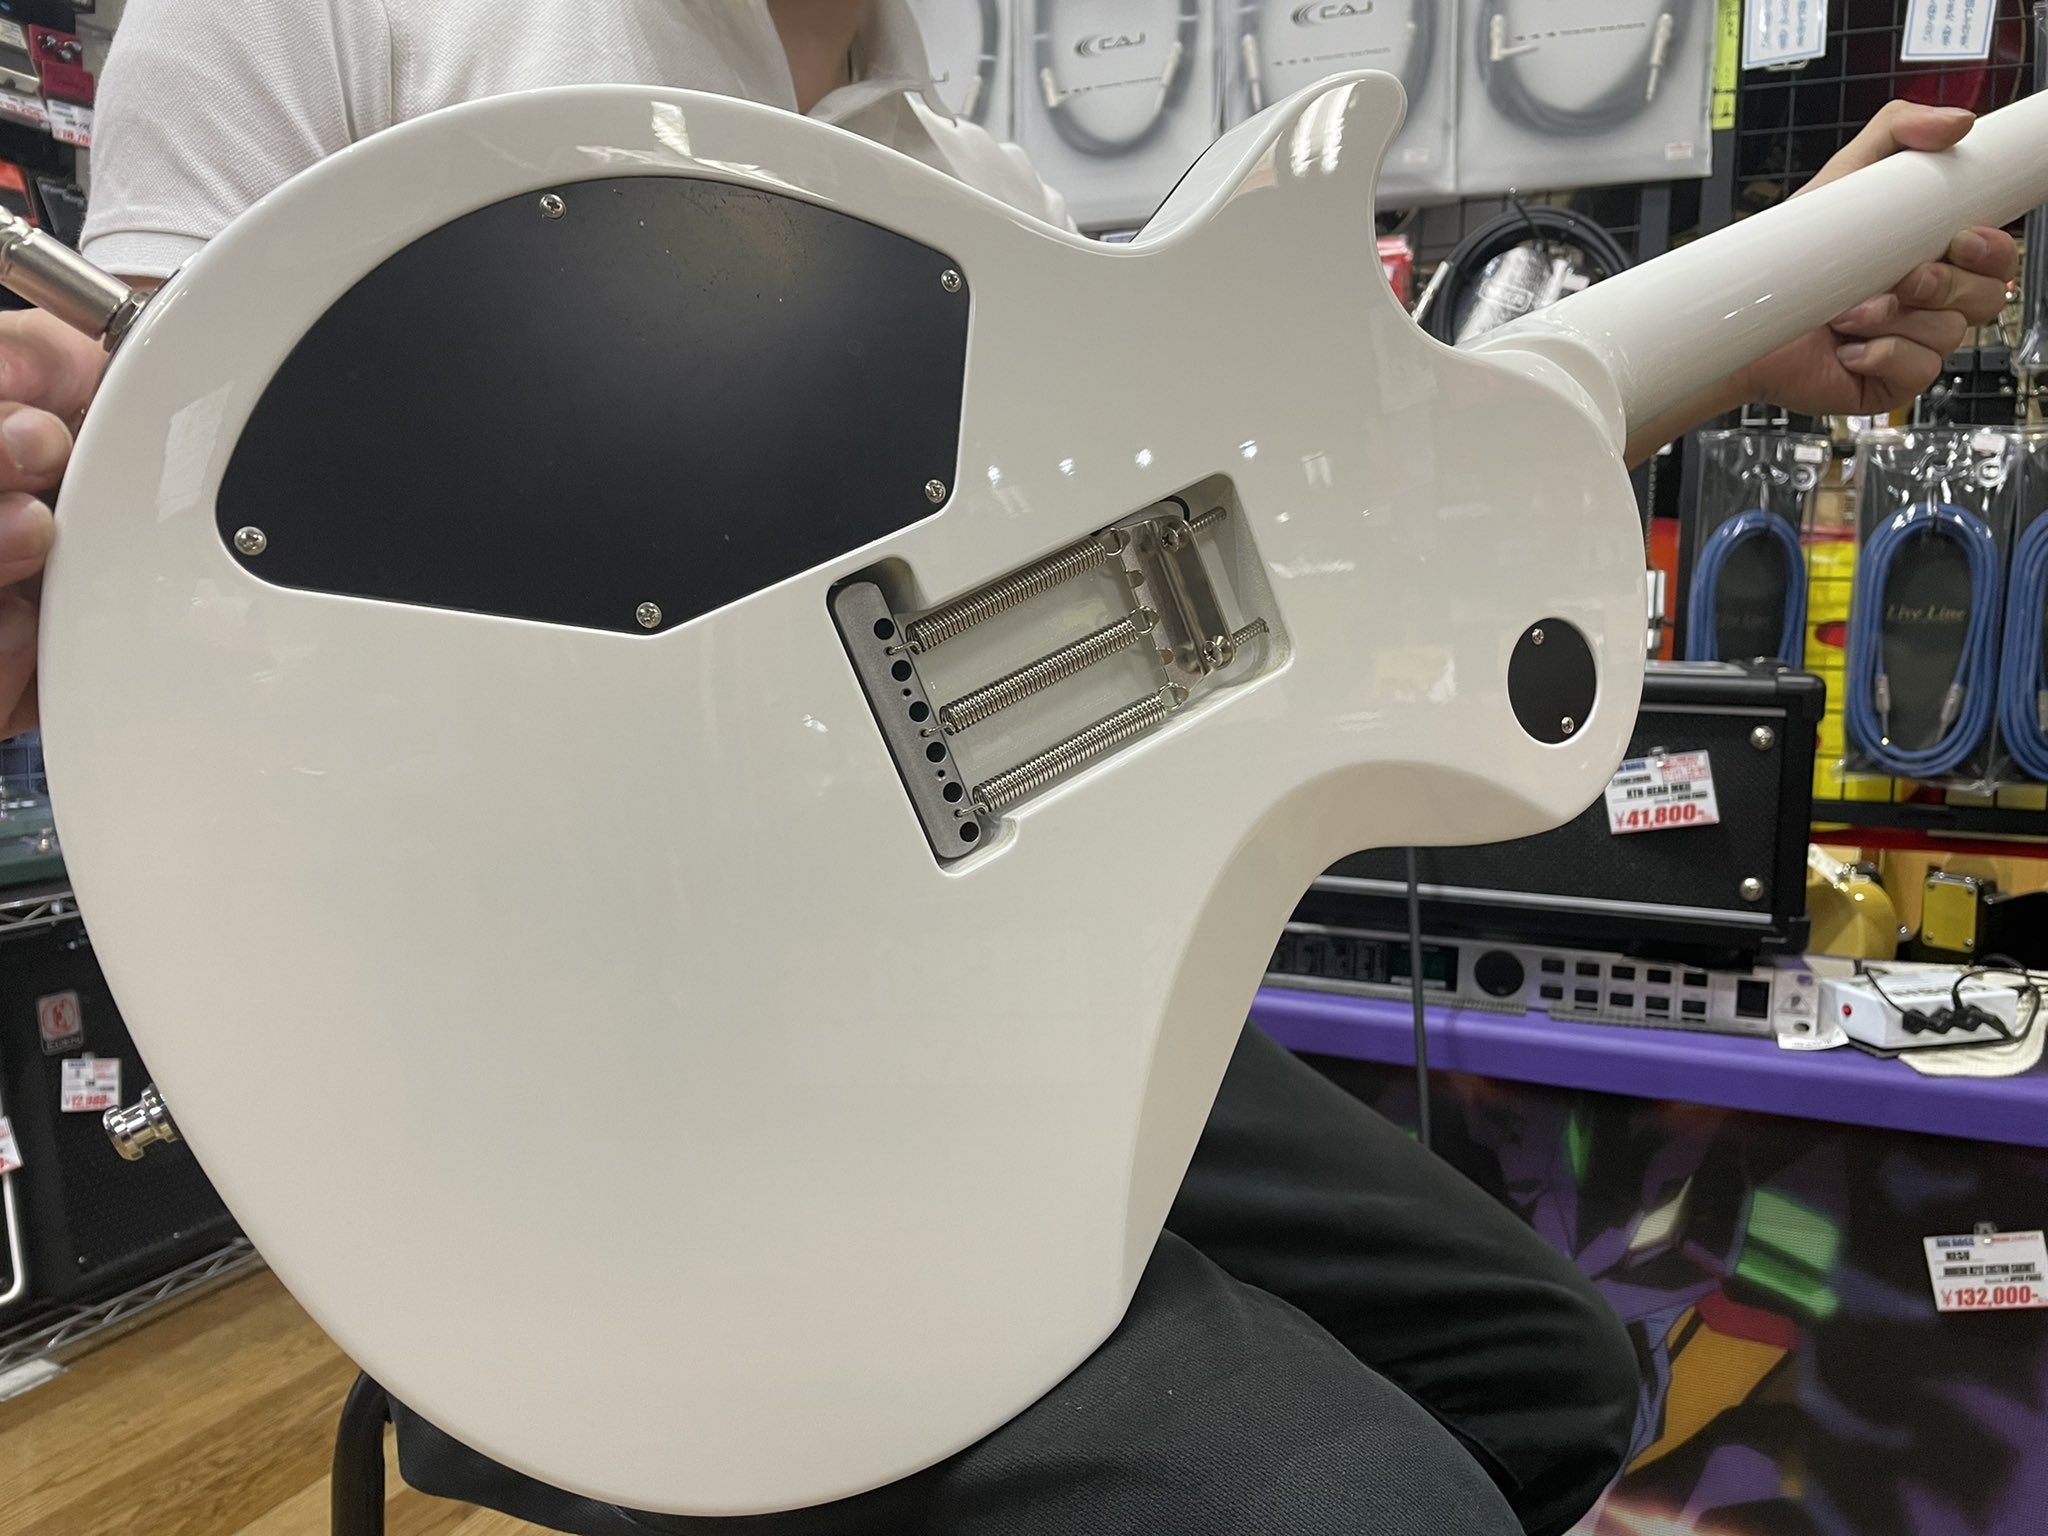 Twitter 上的 Bigboss広島 Esp オーダーメイドギター 納品いたしました Esp Ecモデルを元に ホワイトで統一されたカラーに ブラックバインディングが とてもかっこいい一本ですね Y様大変お待たせしました いつもありがとうございます ギター Espguitas